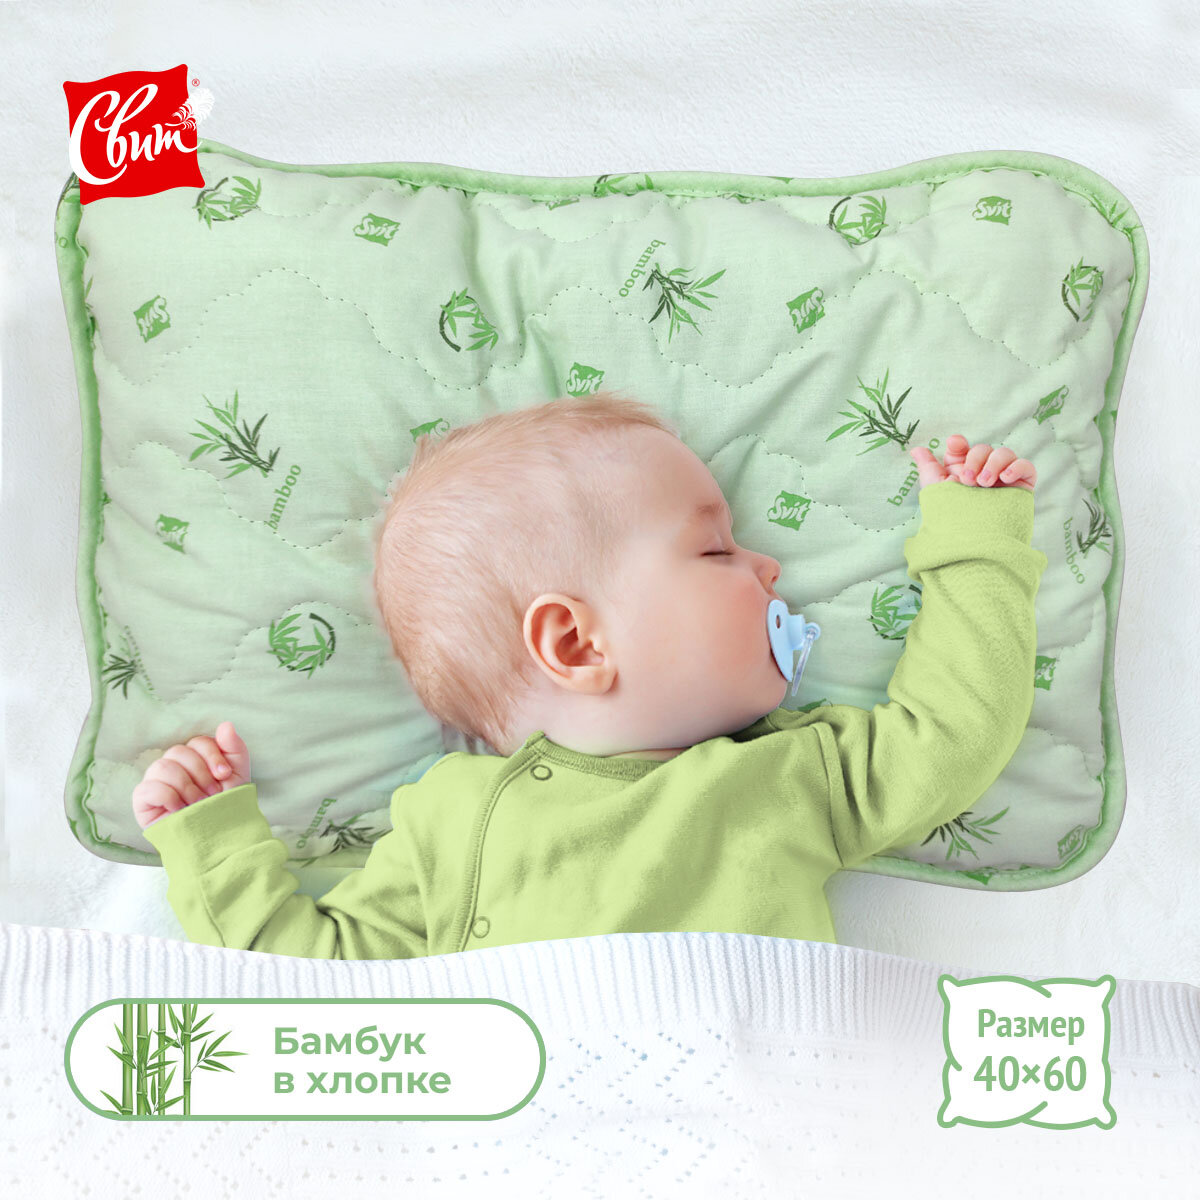 Подушка для сна для новорожденных 40x60 см Бамбук Премиум, цвет зеленый бамбук